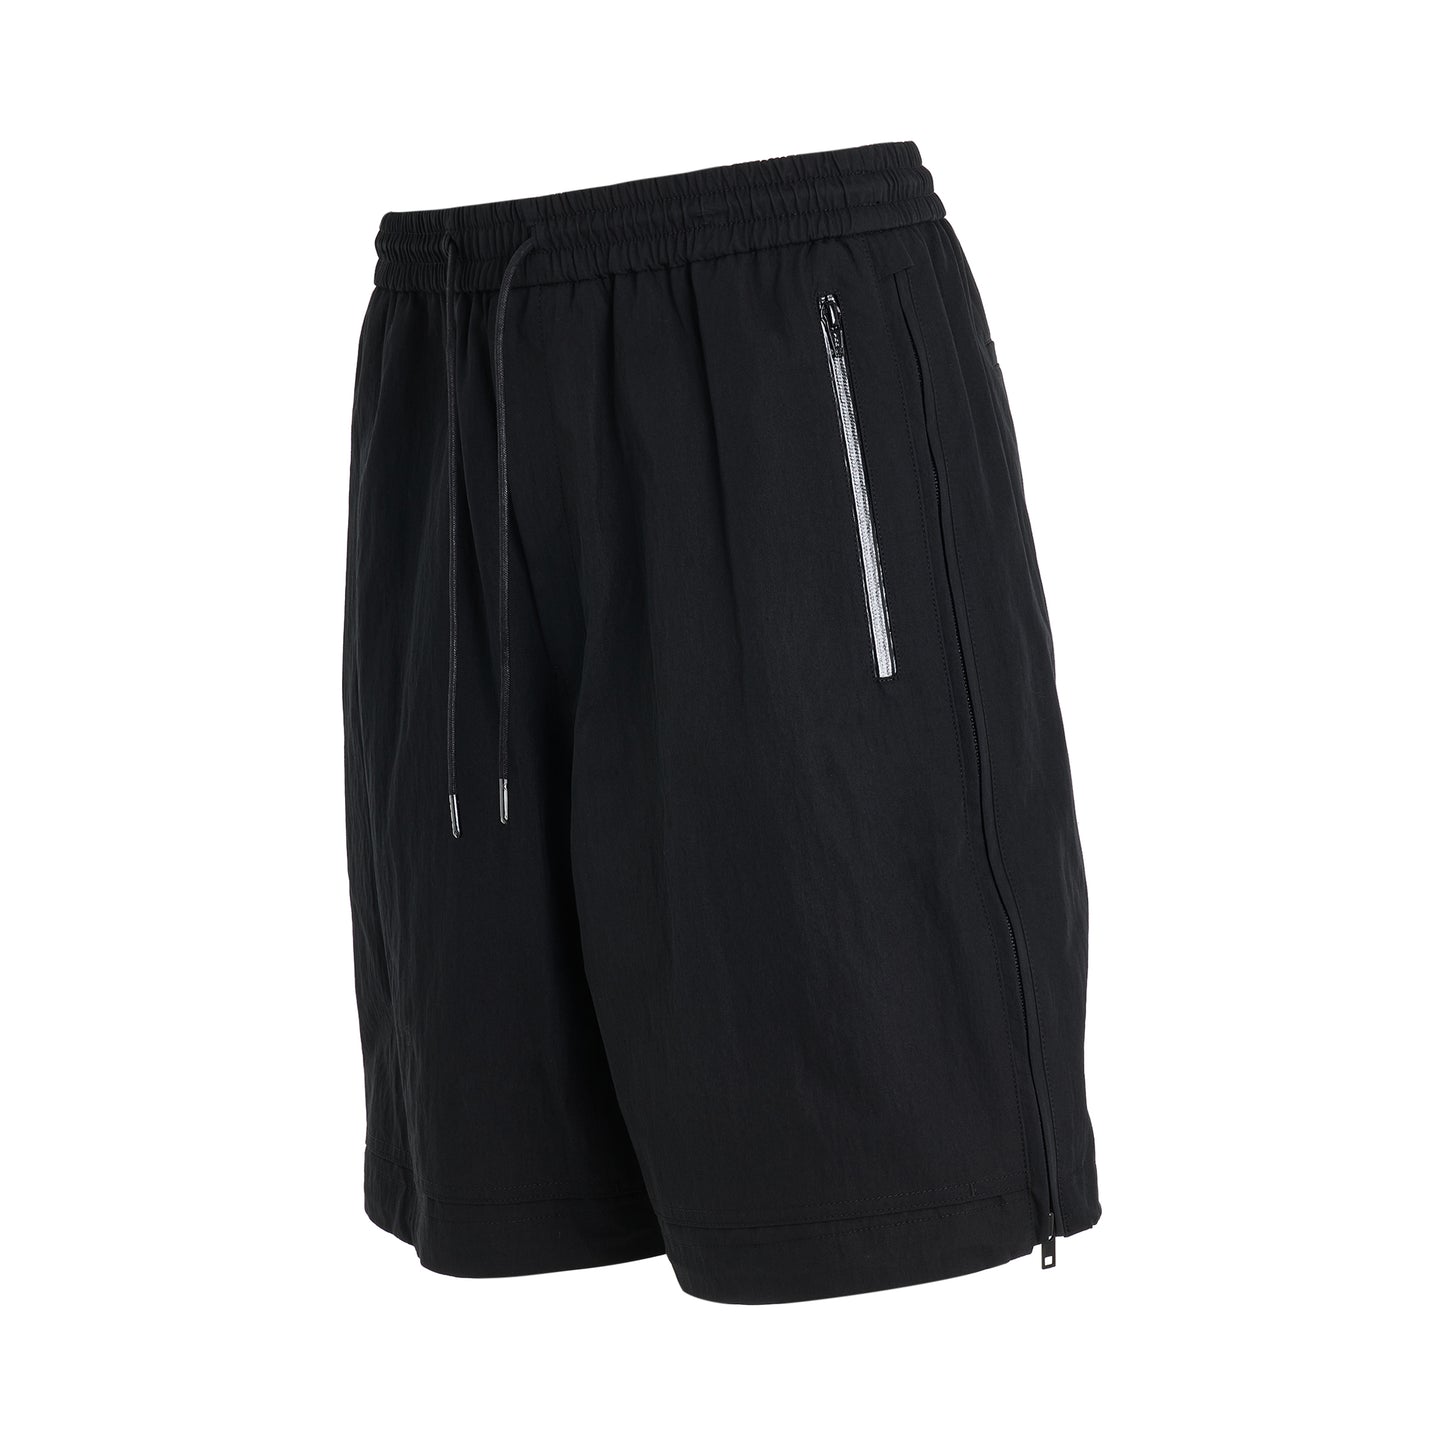 Cotton Side Zipper Shorts in Black